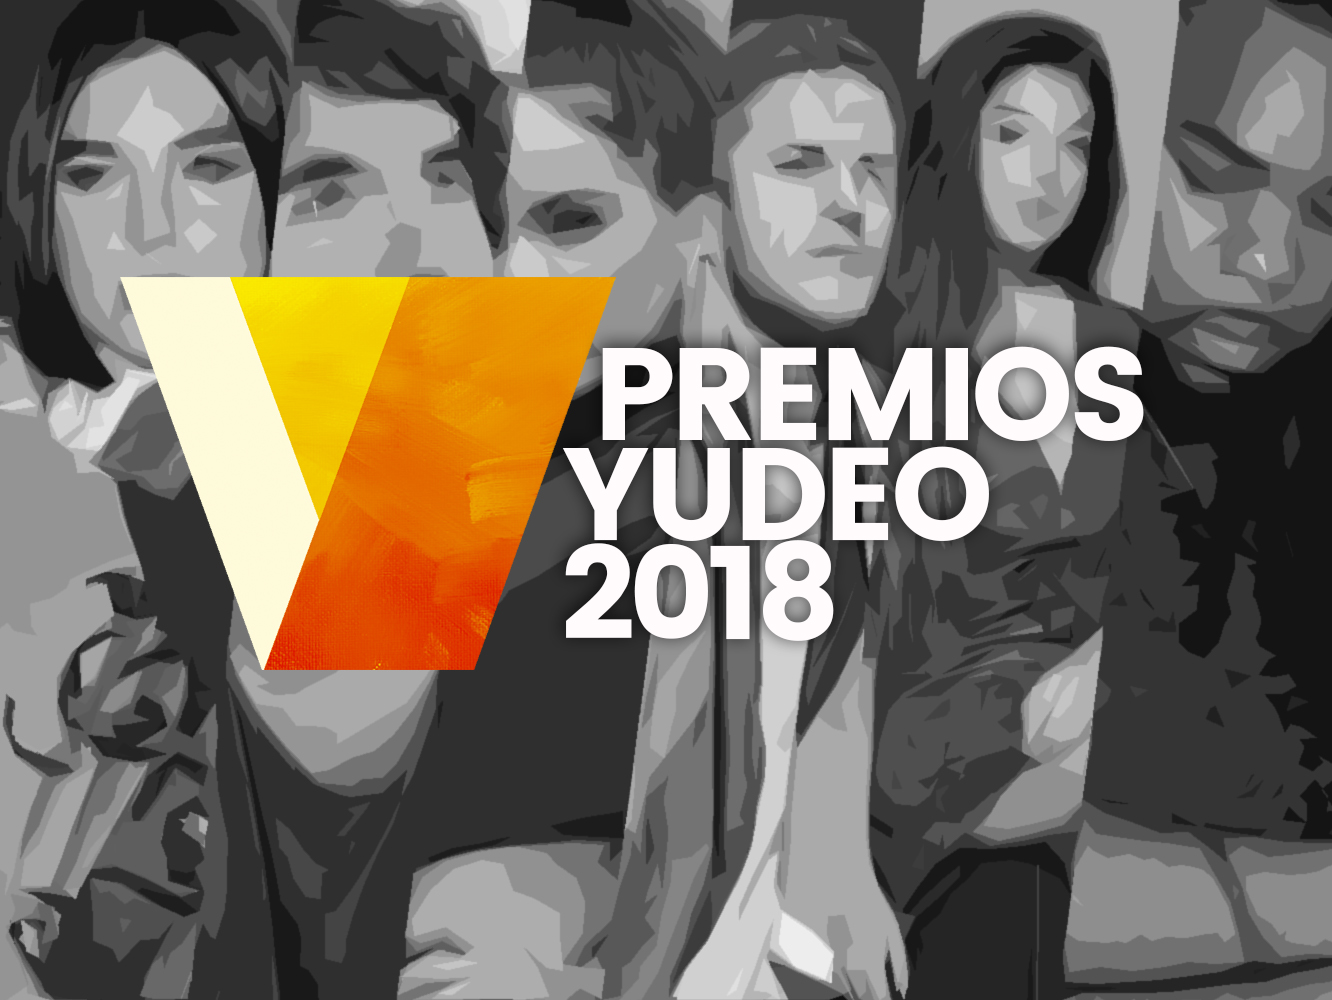  Premios Yudeo 2018 | Los nominados a Mejor Grabación